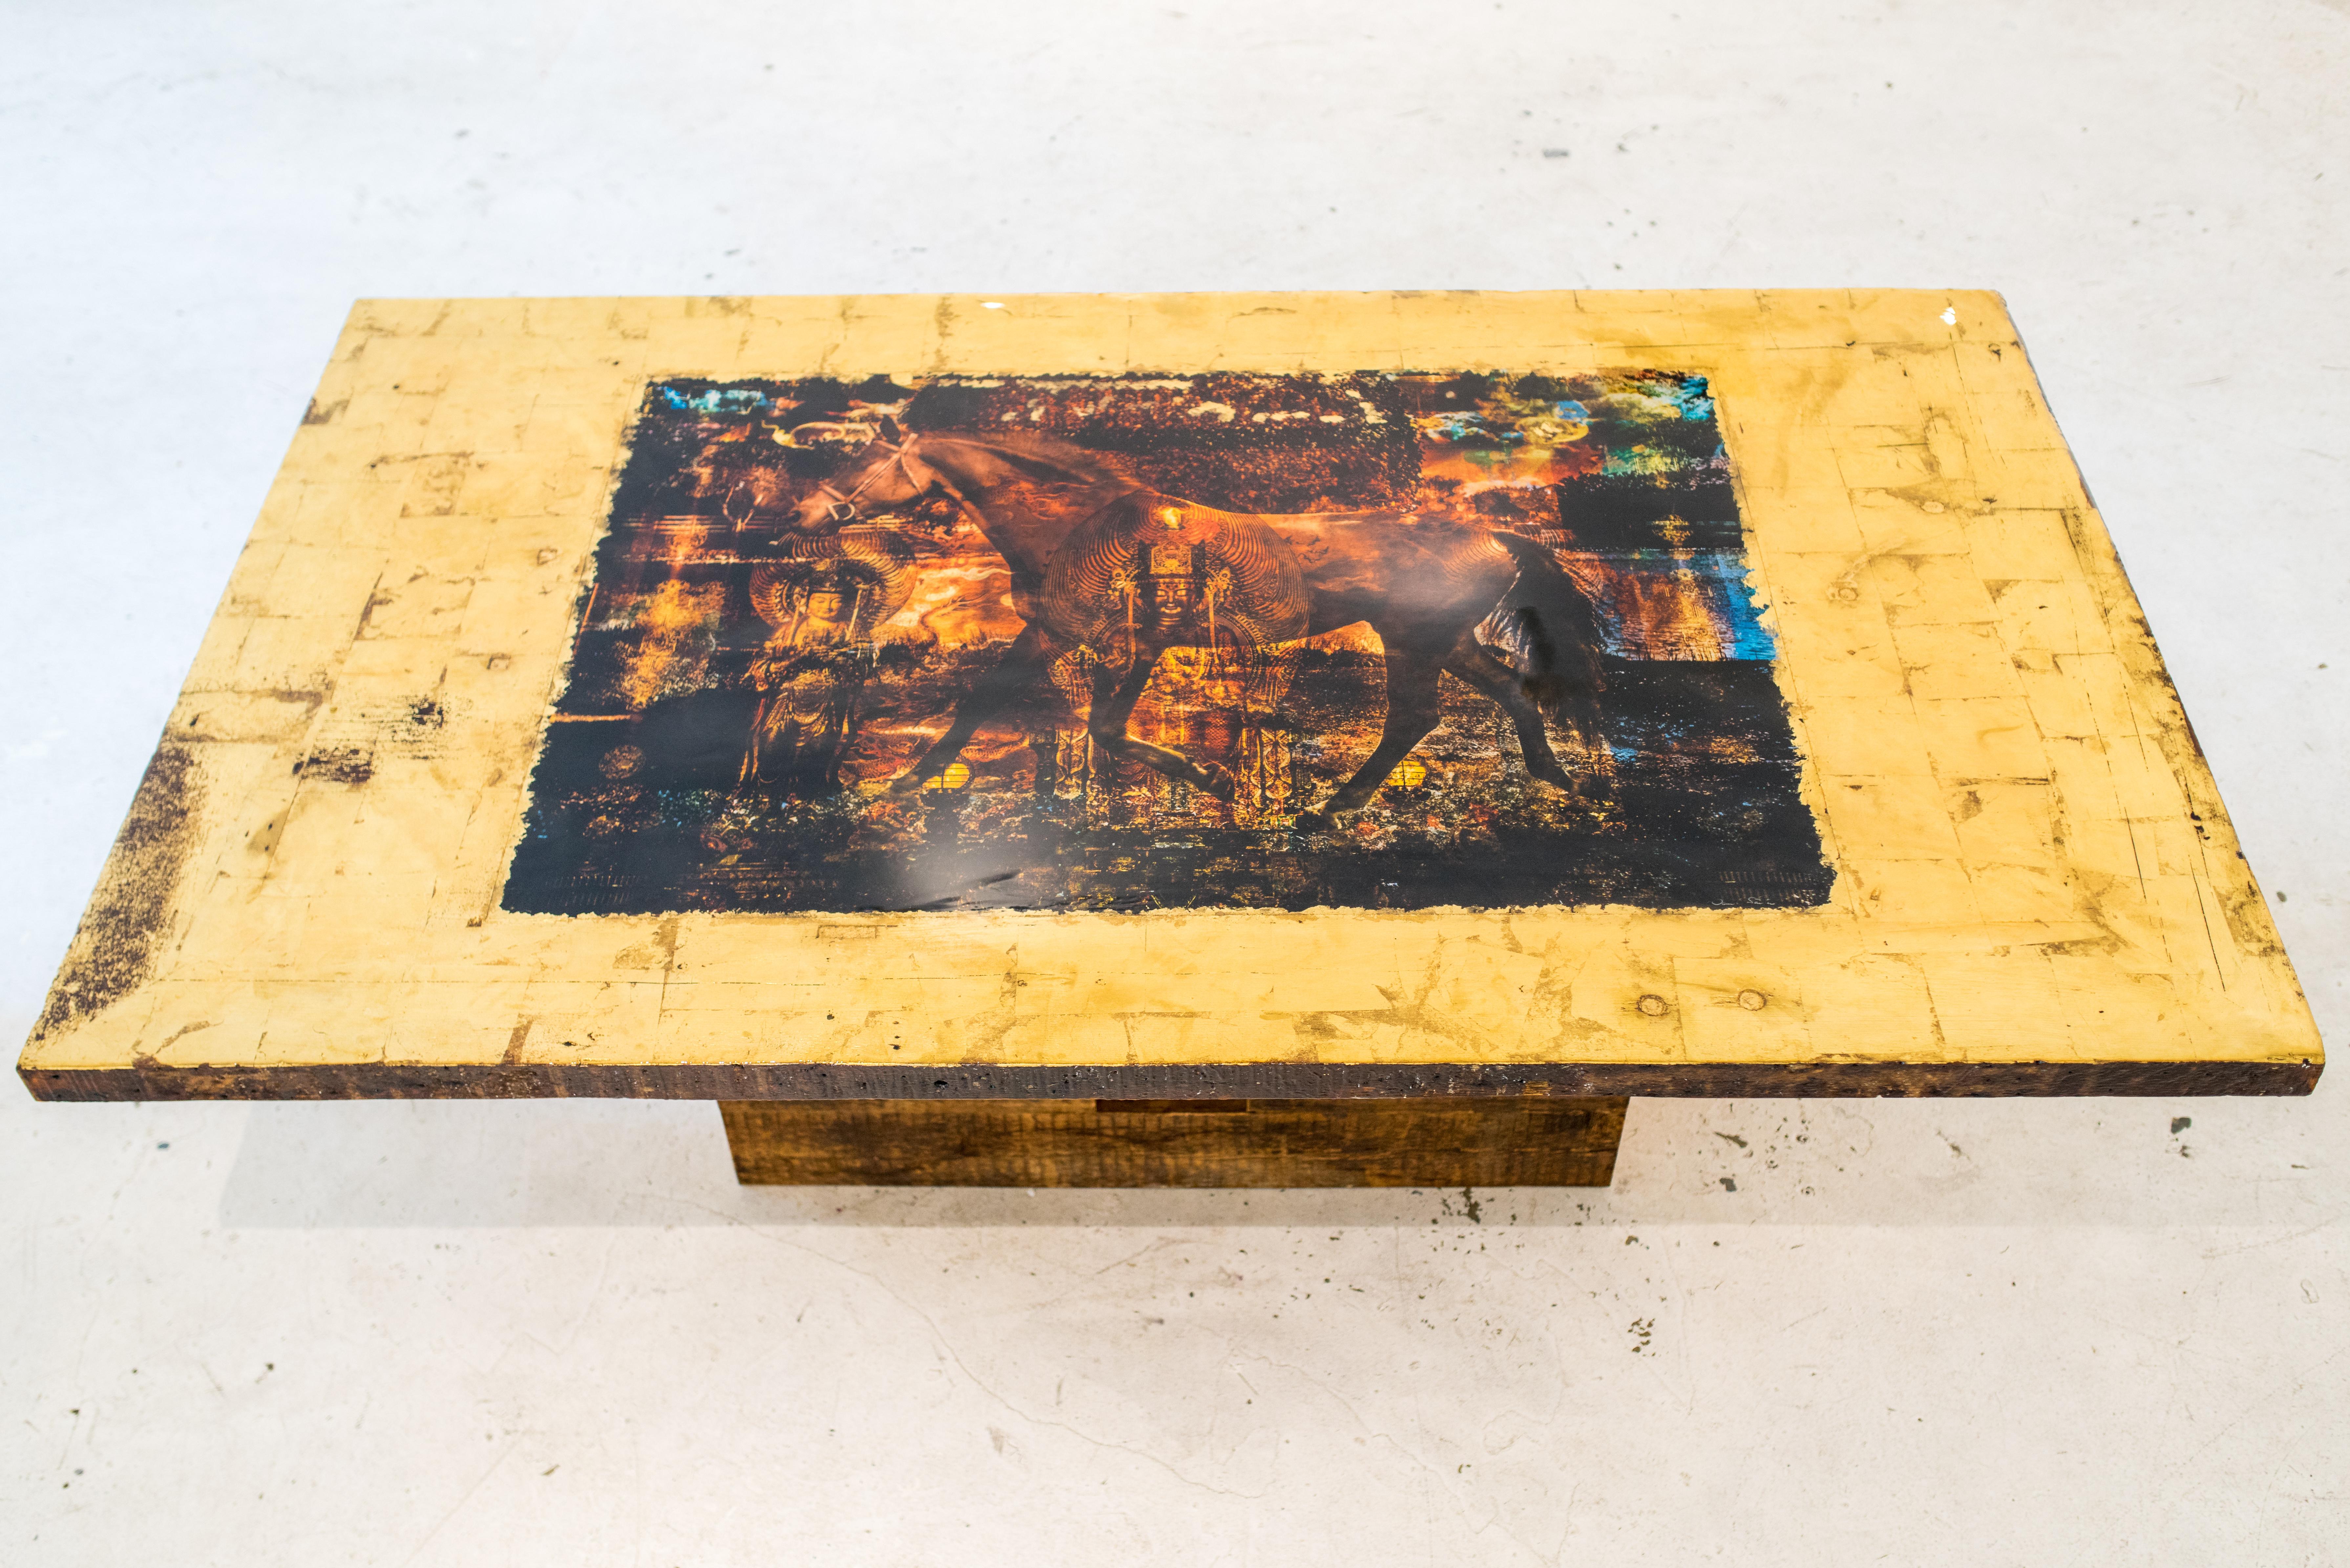 La table Collaboration a été réalisée en collaboration avec l'artiste canadien Daniel Stanford. L'œuvre d'art incorporée dans la table est un mélange unique de photographie avec des éléments de collage et une application précise de feuilles d'or,